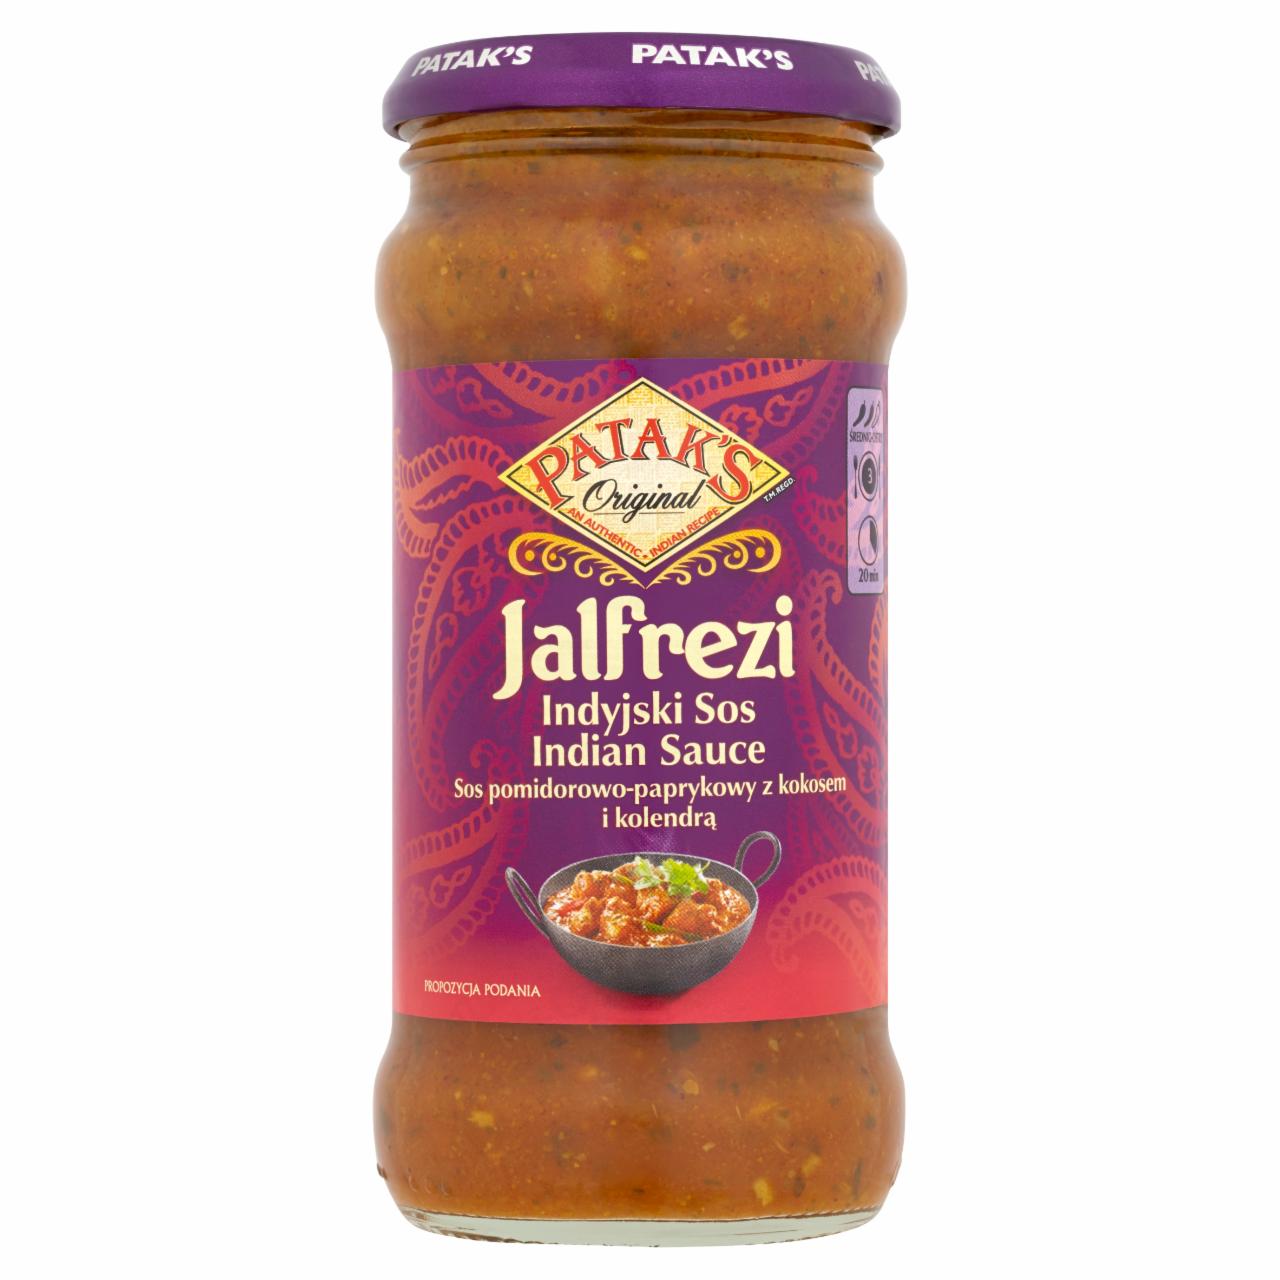 Zdjęcia - Patak's Jalfrezi Indyjski sos pomidorowo-paprykowy z kokosem i kolendrą 350 g